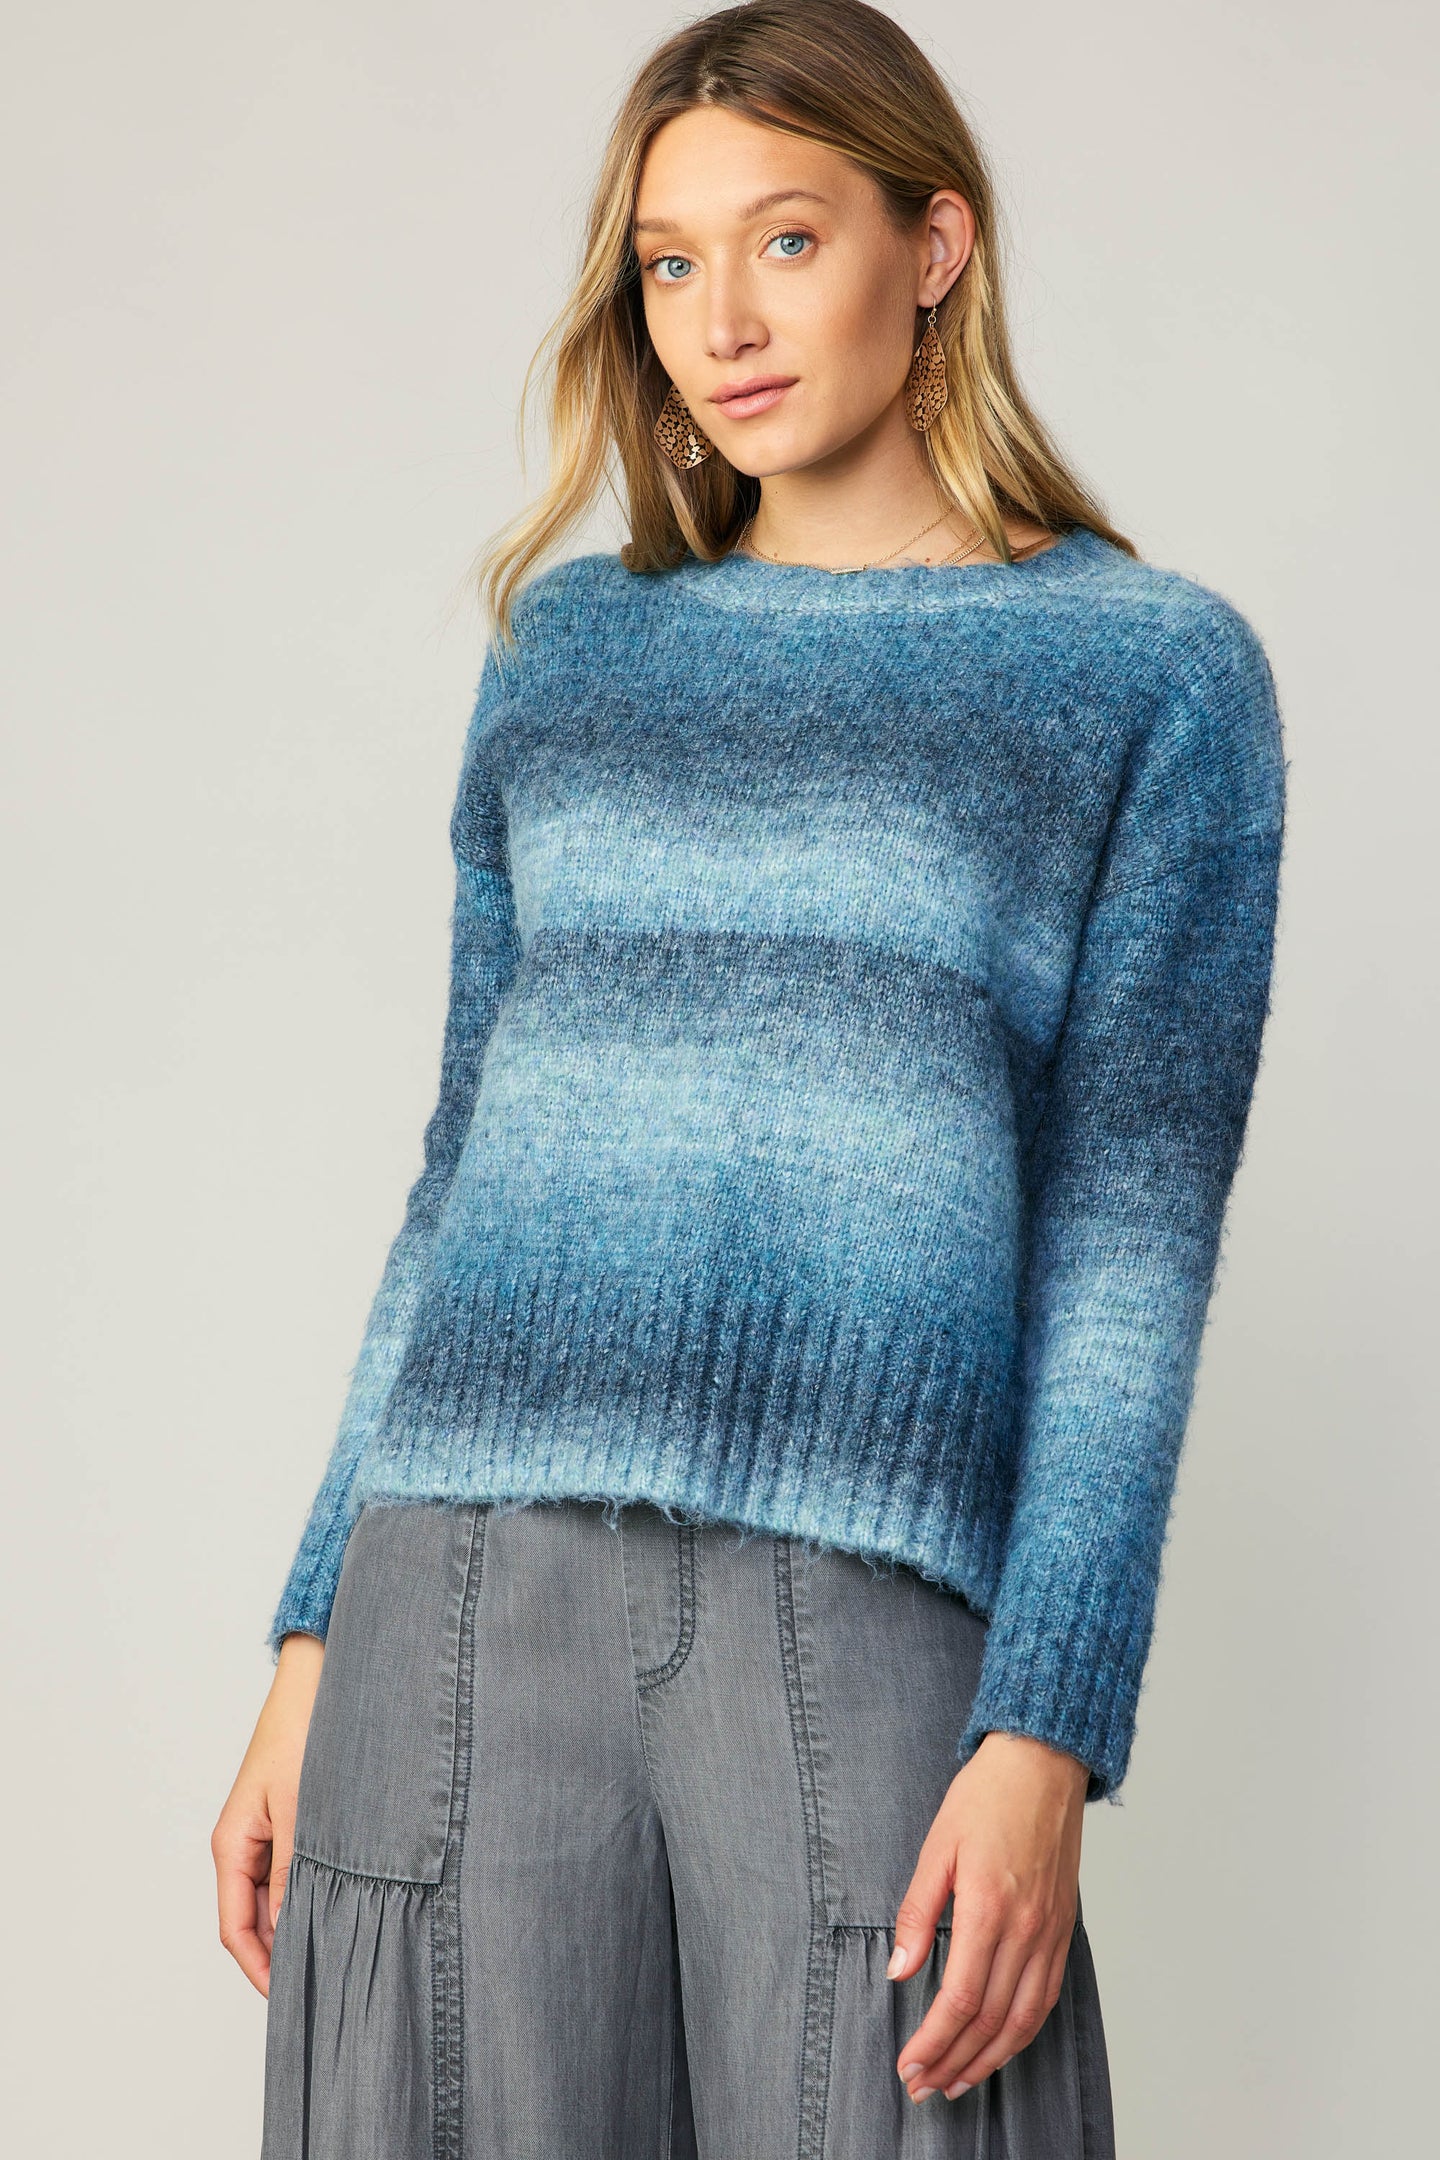 Gradient Sweater Top